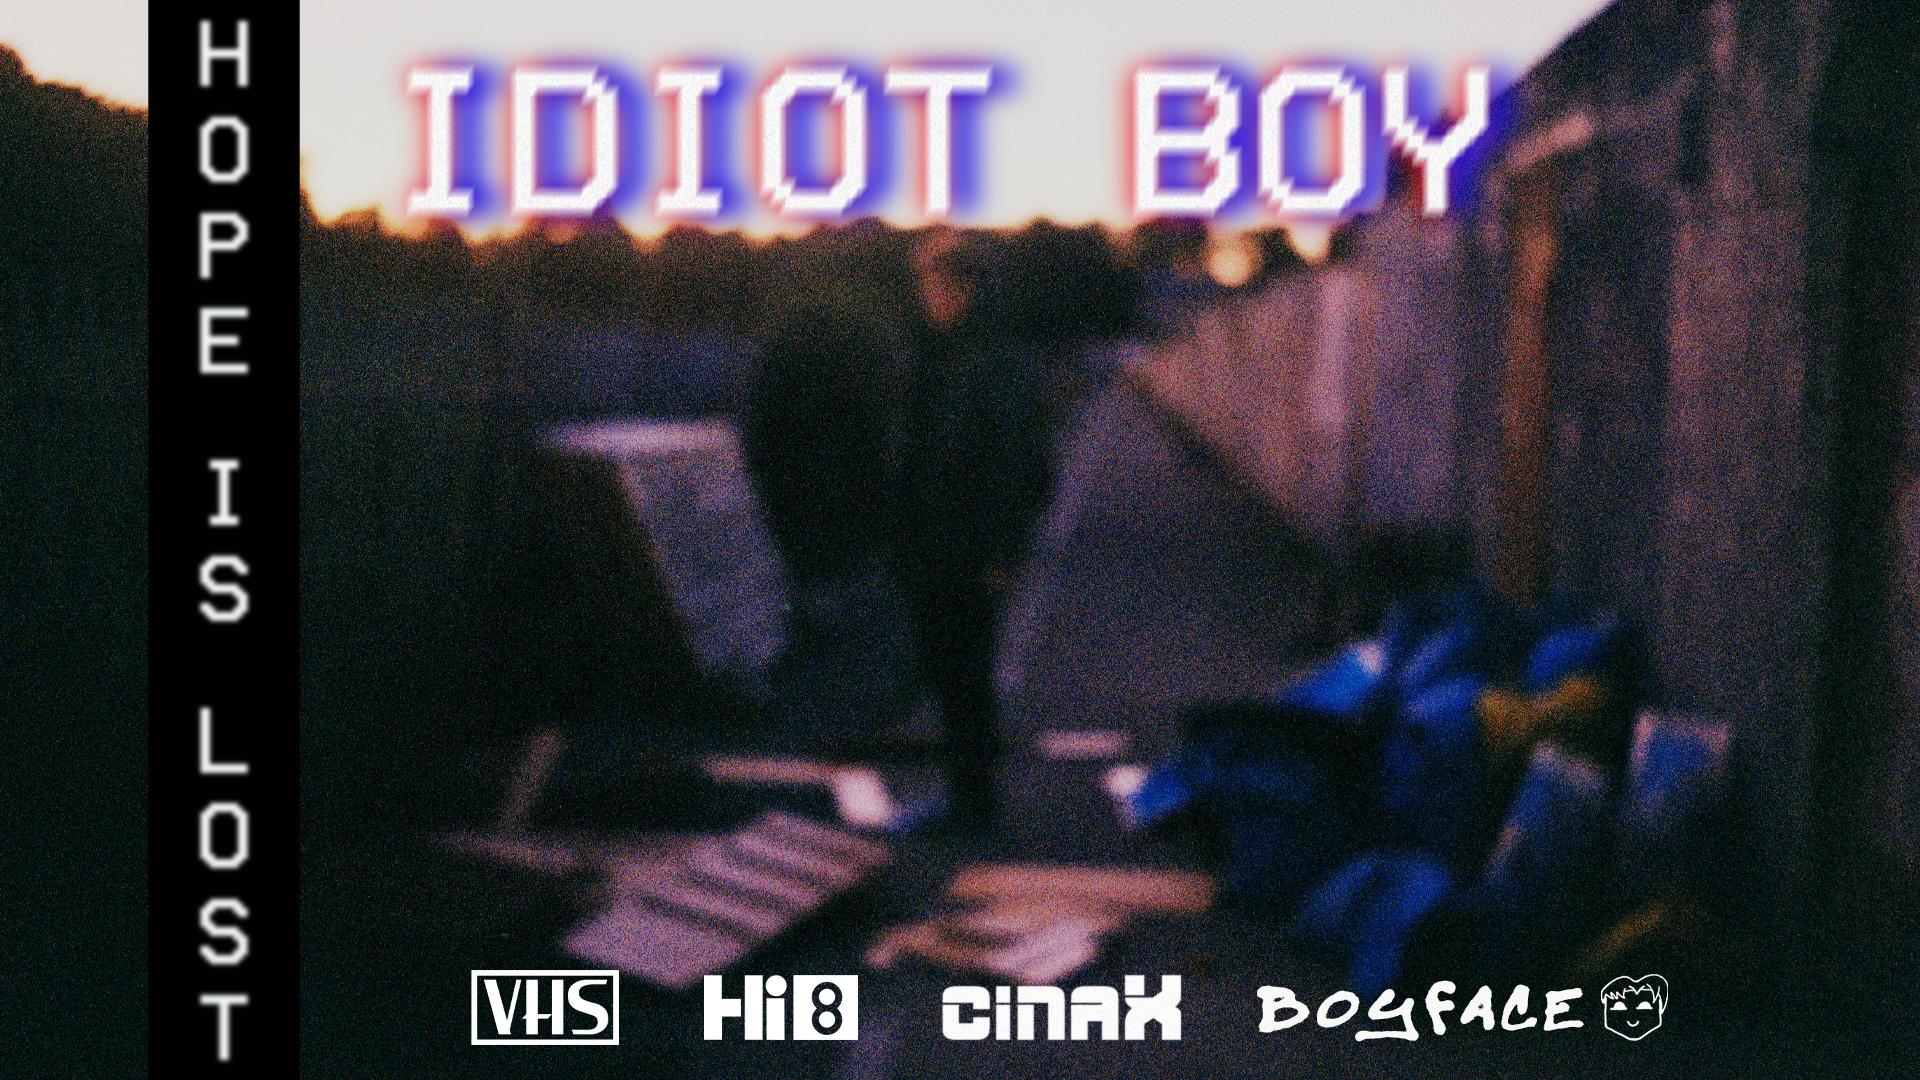 Idiot Boy